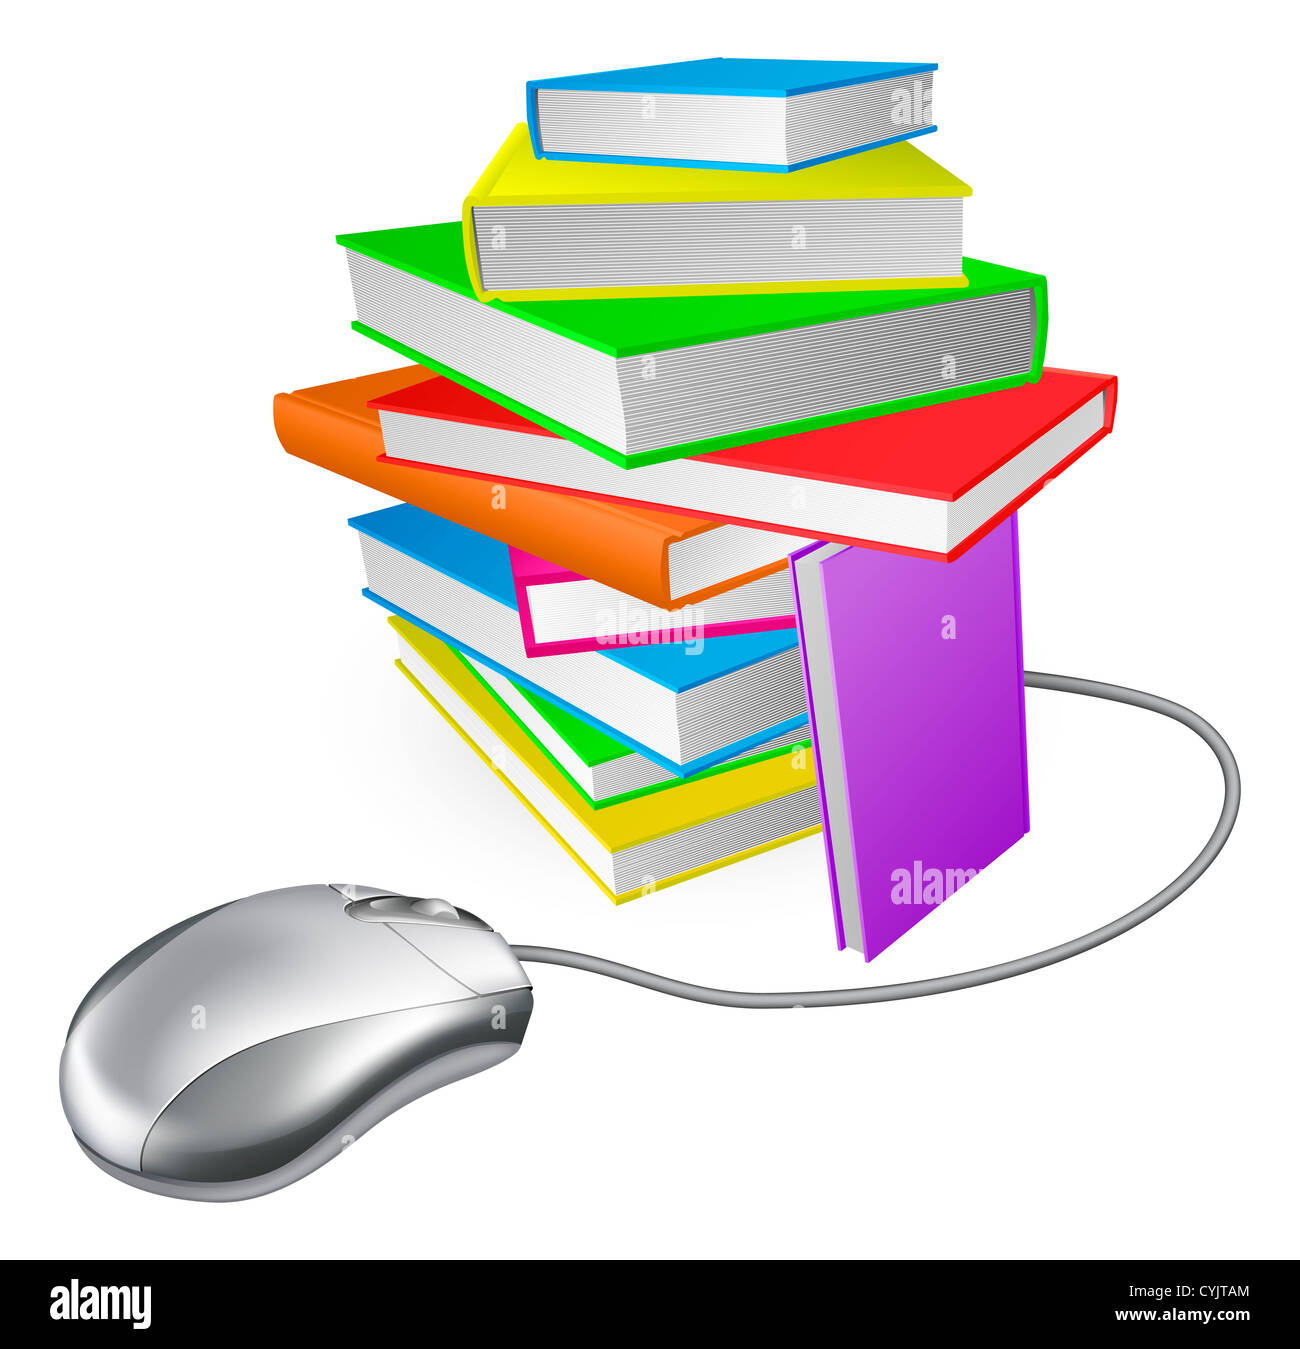 Buch Stapelkonzept Computer Maus. Online-Bibliothek, Ebooks oder Internet-e-Learning oder Fernunterricht wäre Stockfoto